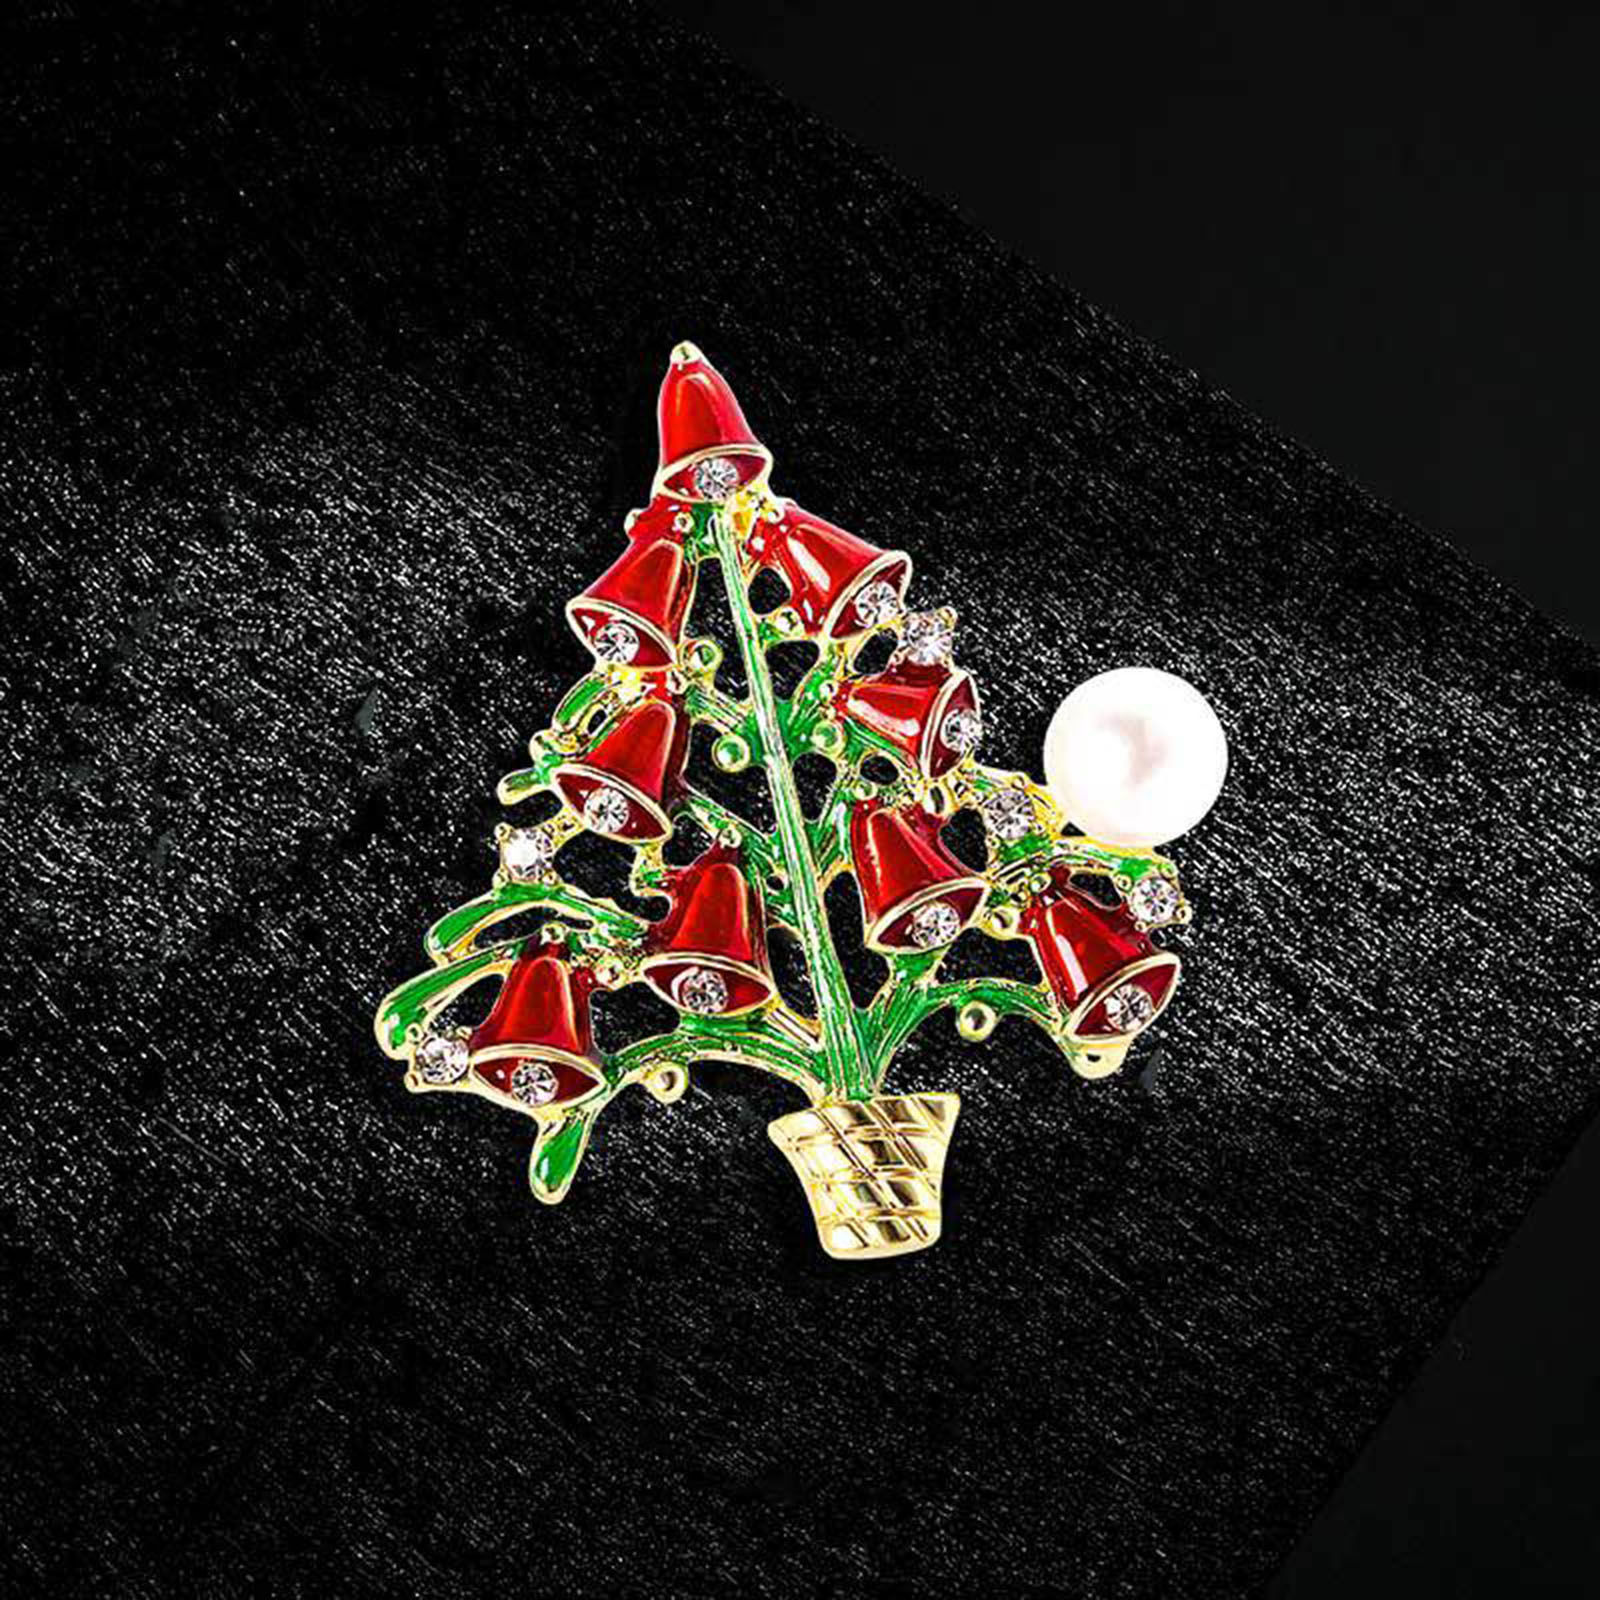 Bild von Stilvoll Brosche Weihnachten Weihnachtsbaum Bunt Emaille 1 Stück